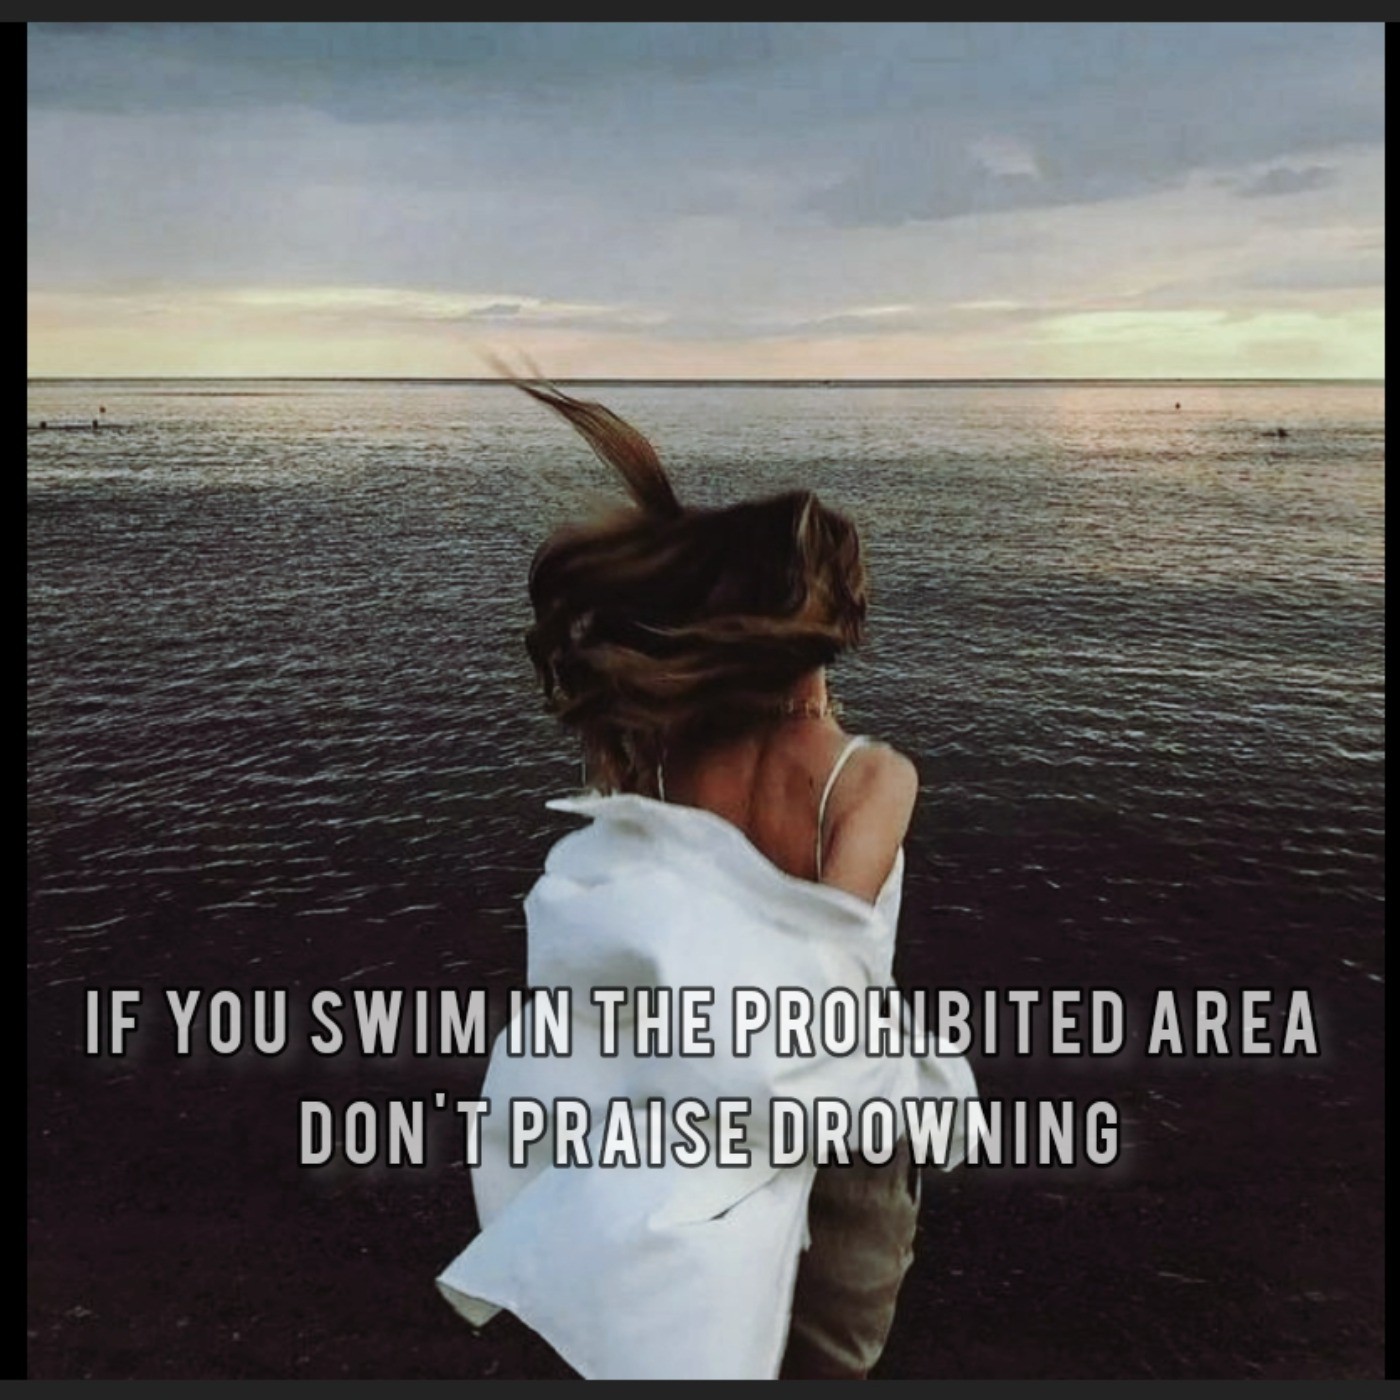 اگه تو منطقه ممنوعه شنا کردی به غرق شدن نگو تقدیر! 